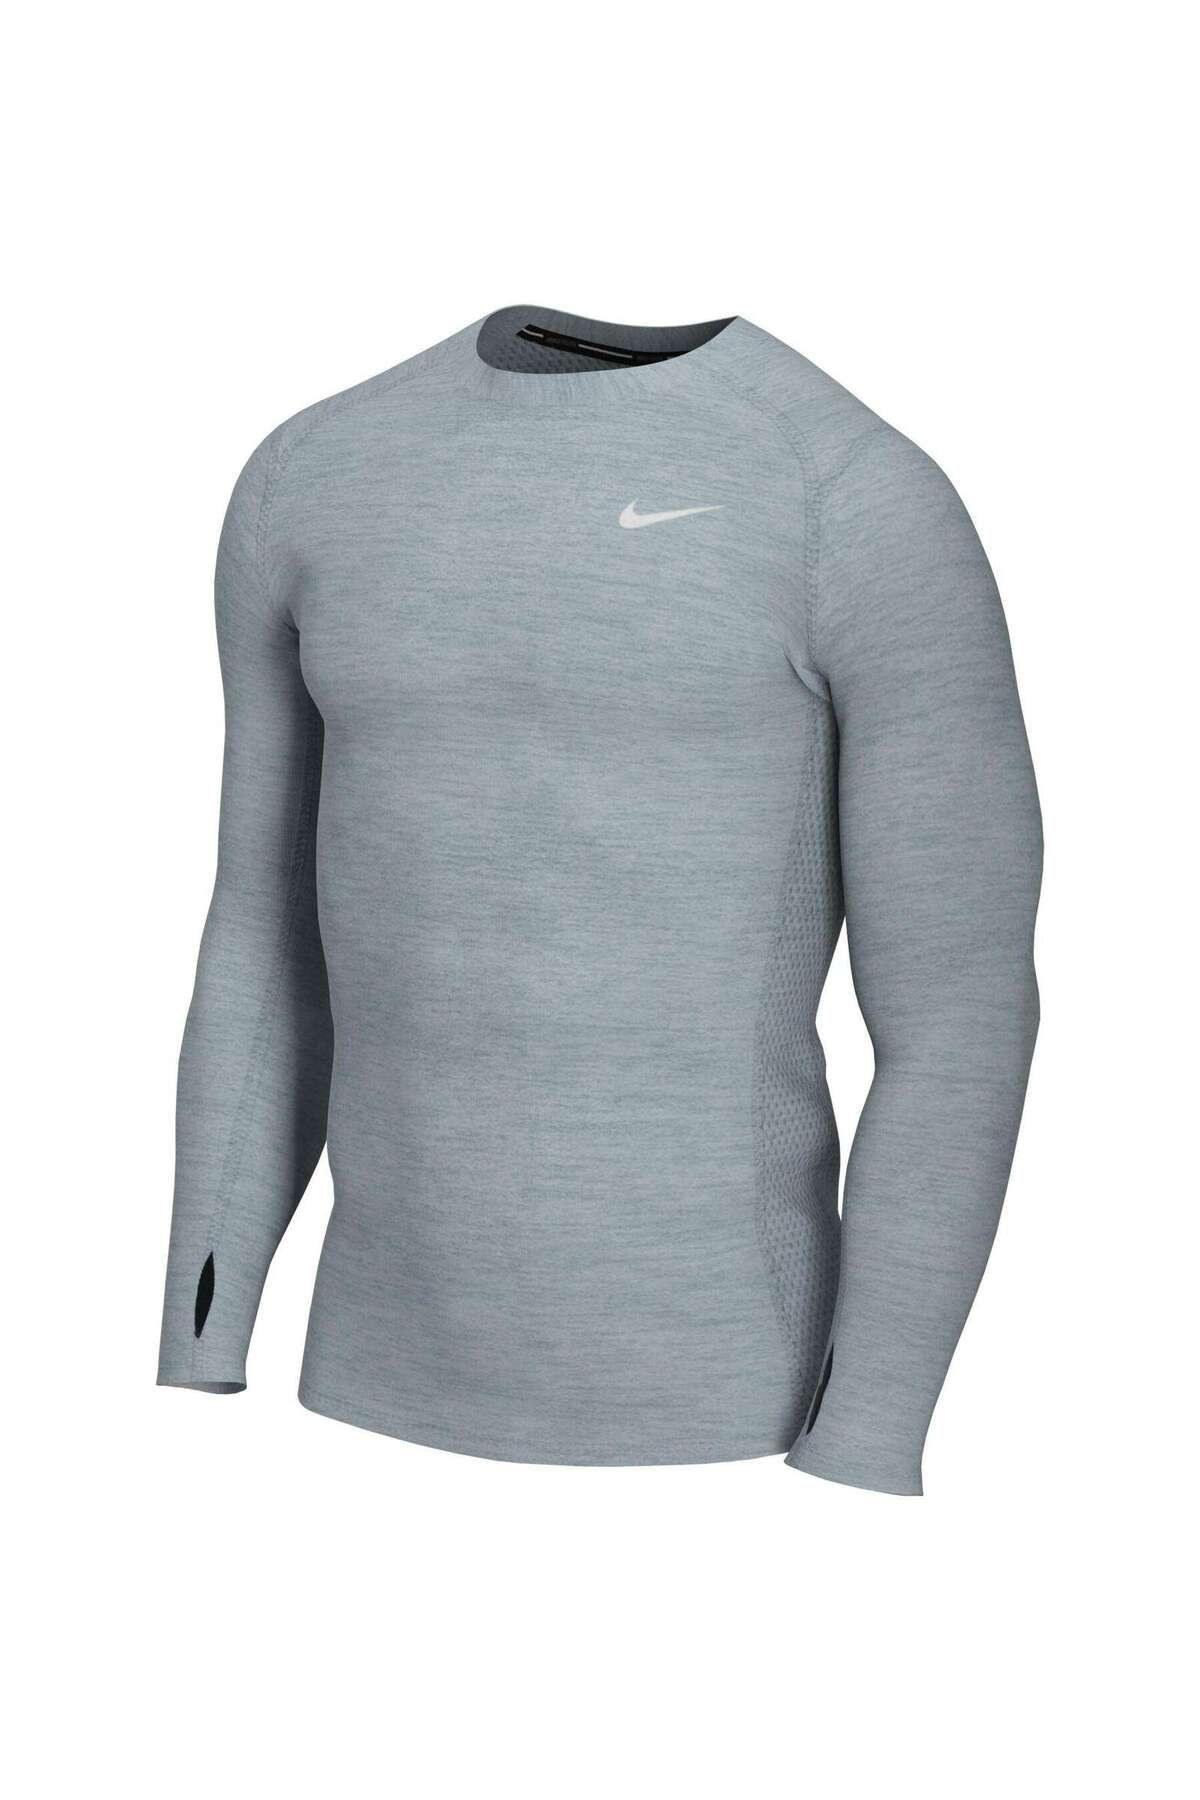 Nike Men's Dry Fit Long At3949-041